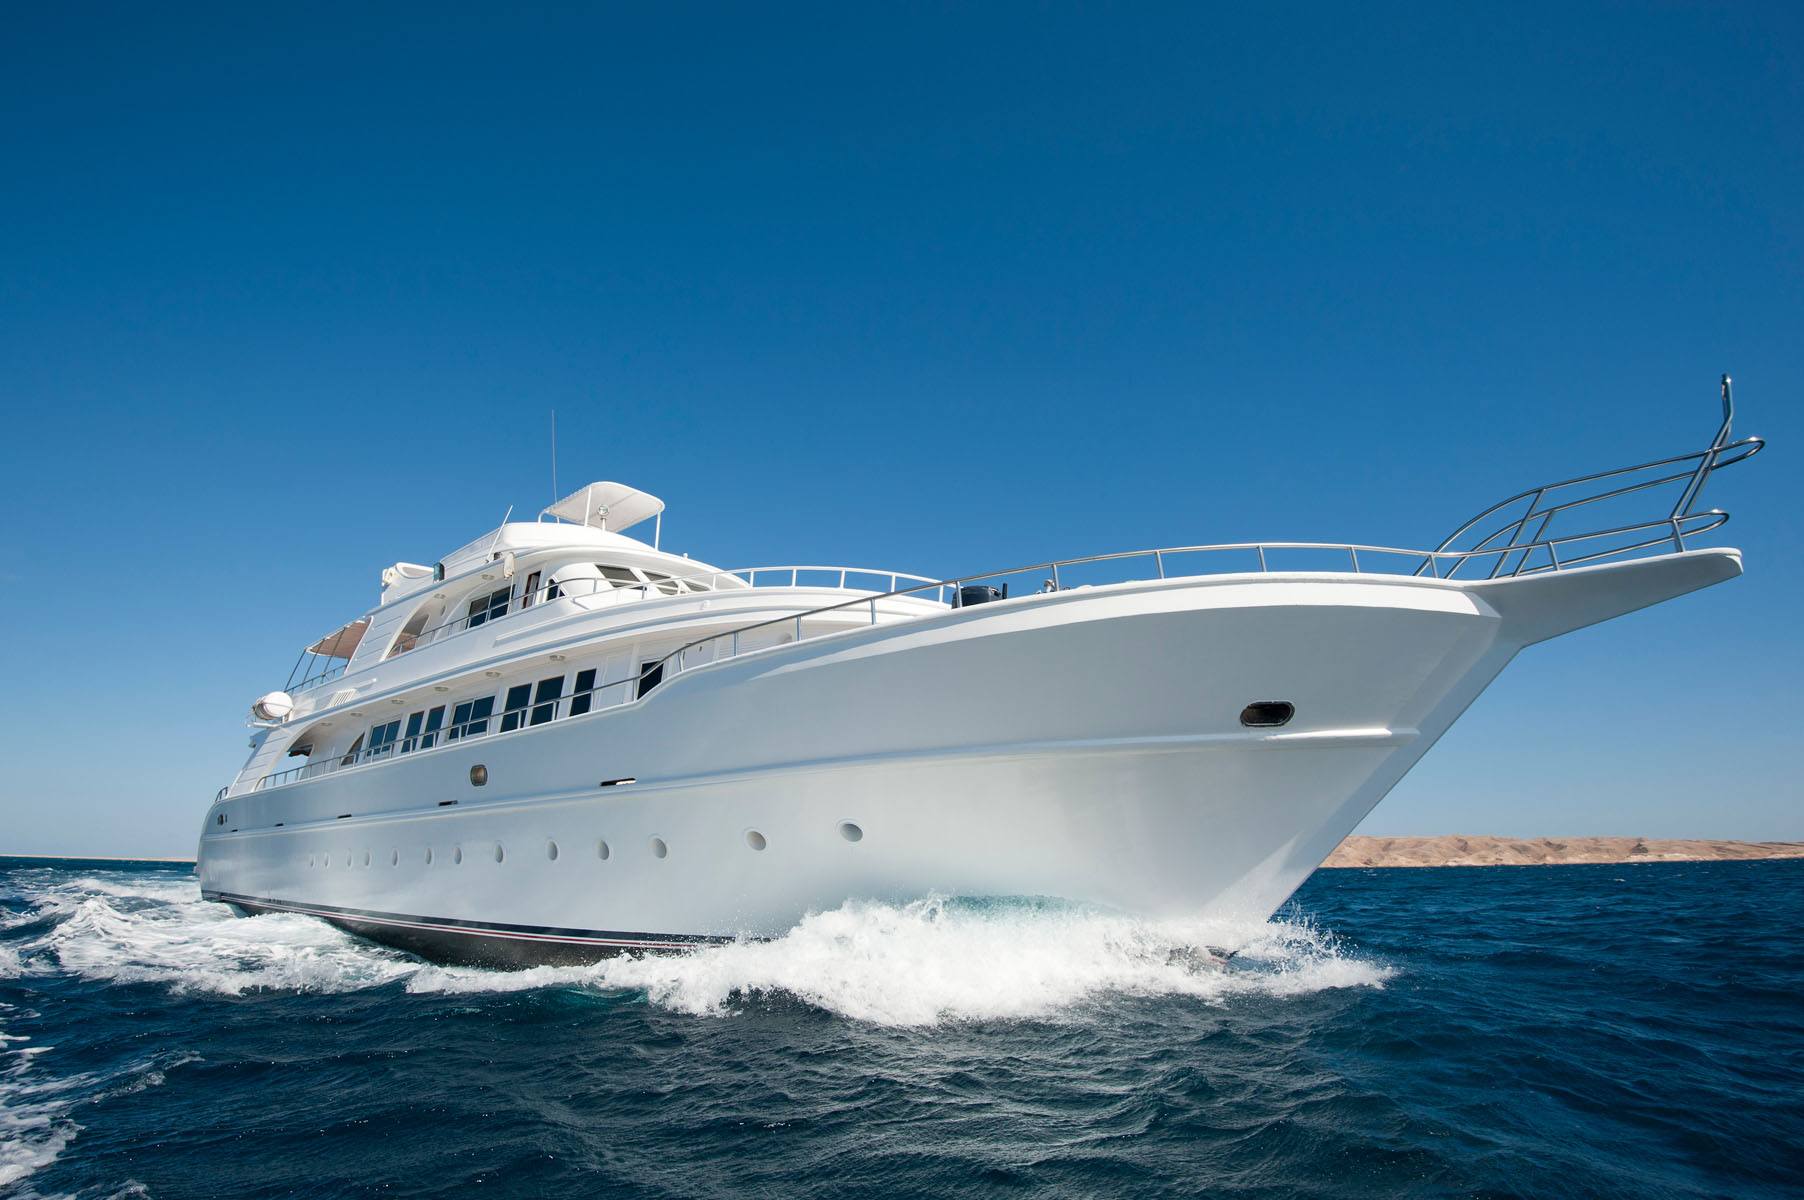 Luxury Motor Yacht at Sea